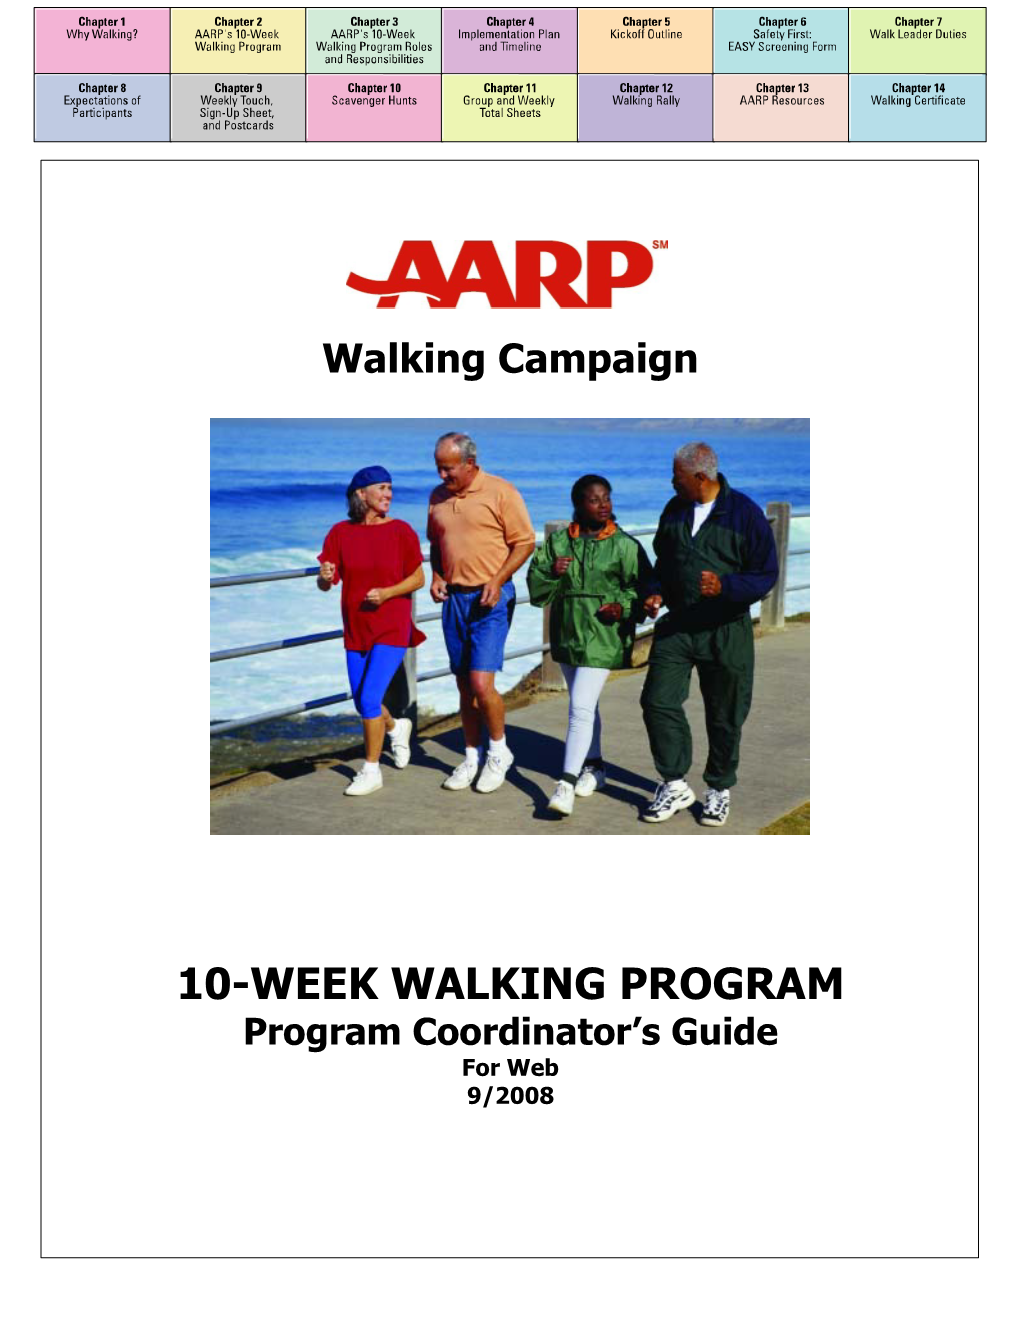 AARP's 10-Week Walking Program Coordinator's Guide